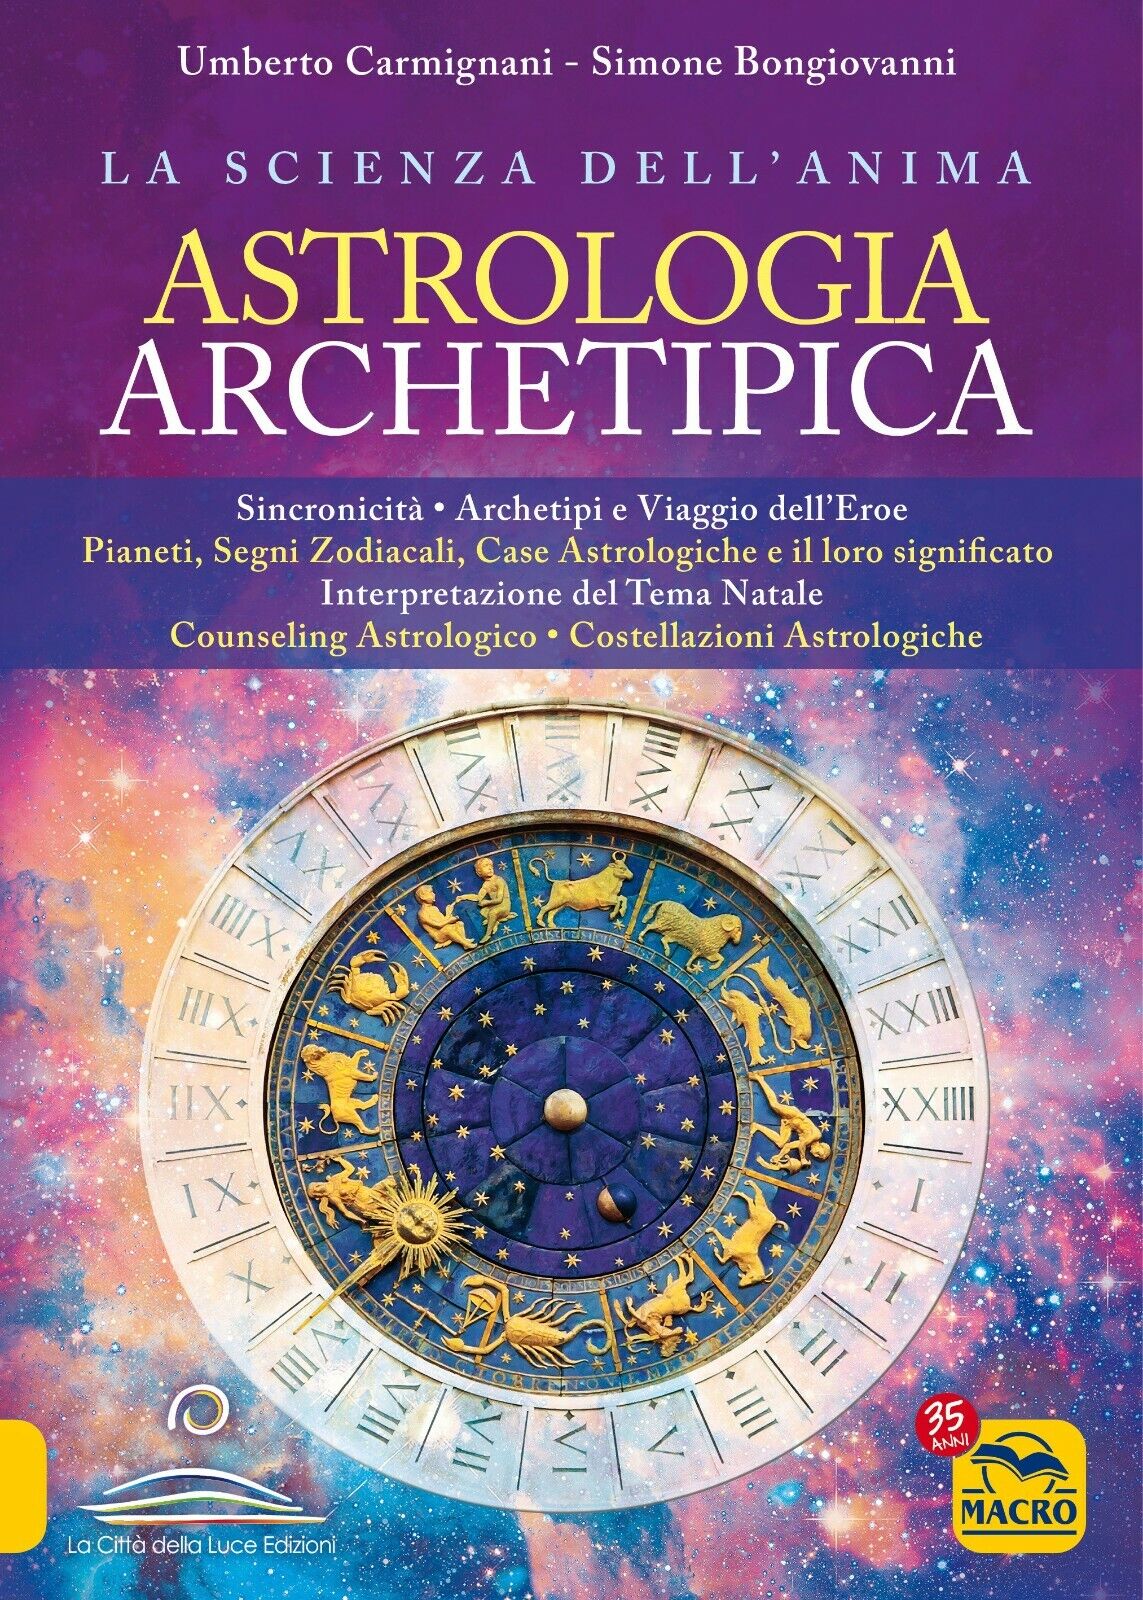 Astrologia archetipica di Umberto Carmignani, Simone Bongiovanni,  2021,  Macro  libro usato